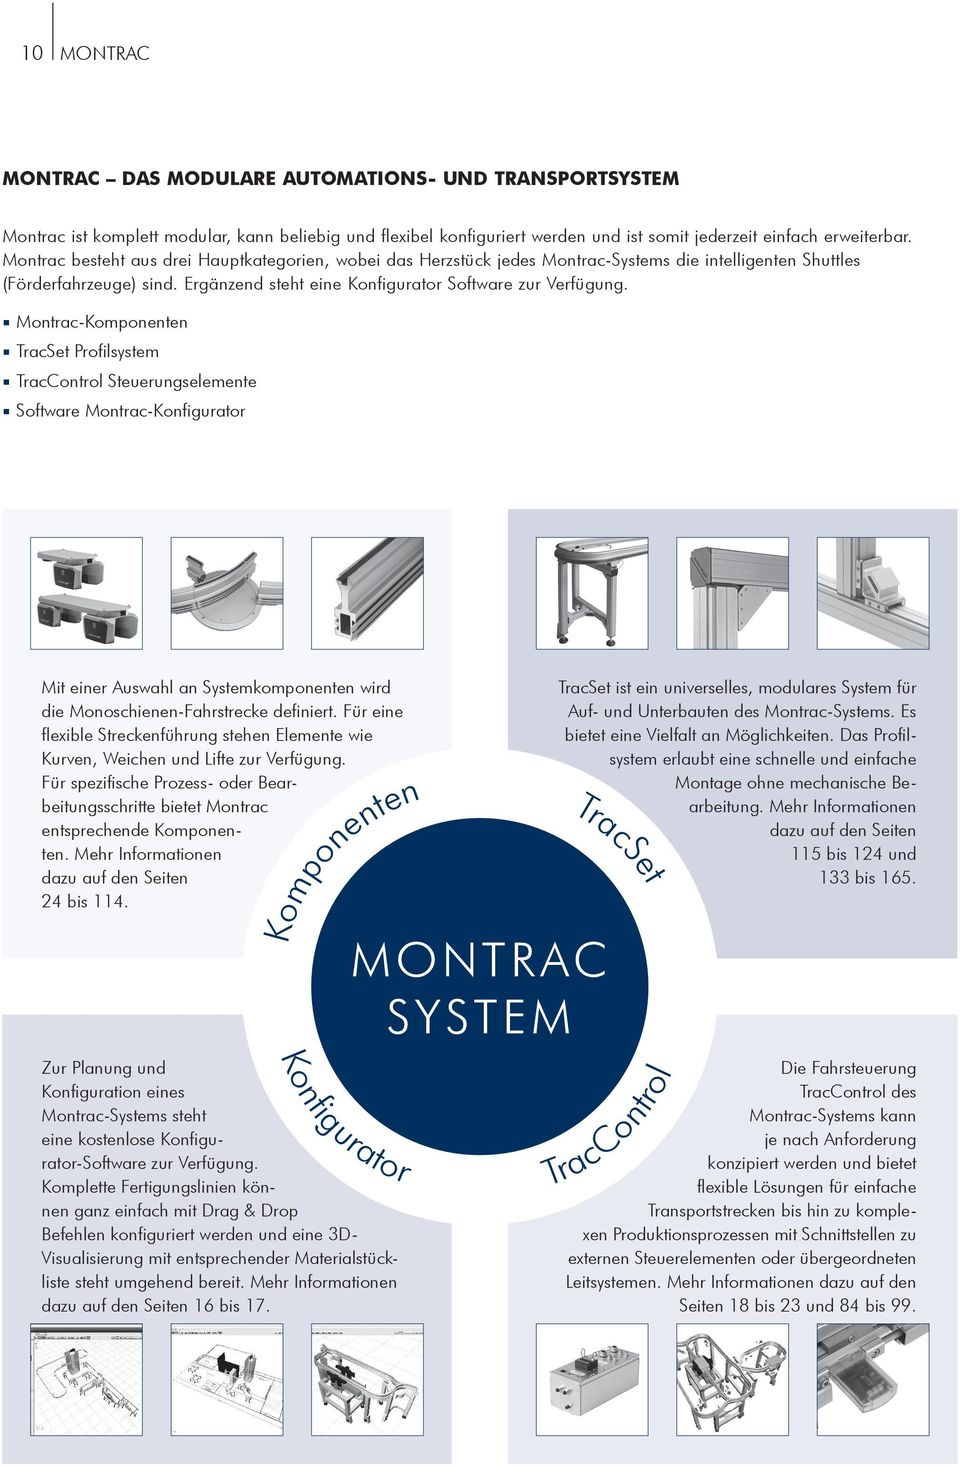 Montrac-Komponenten TracSet Profilsystem TracControl Steuerungselemente Software Montrac-Konfigurator Mit einer Auswahl an Systemkomponenten wird die Monoschienen-Fahrstrecke definiert.